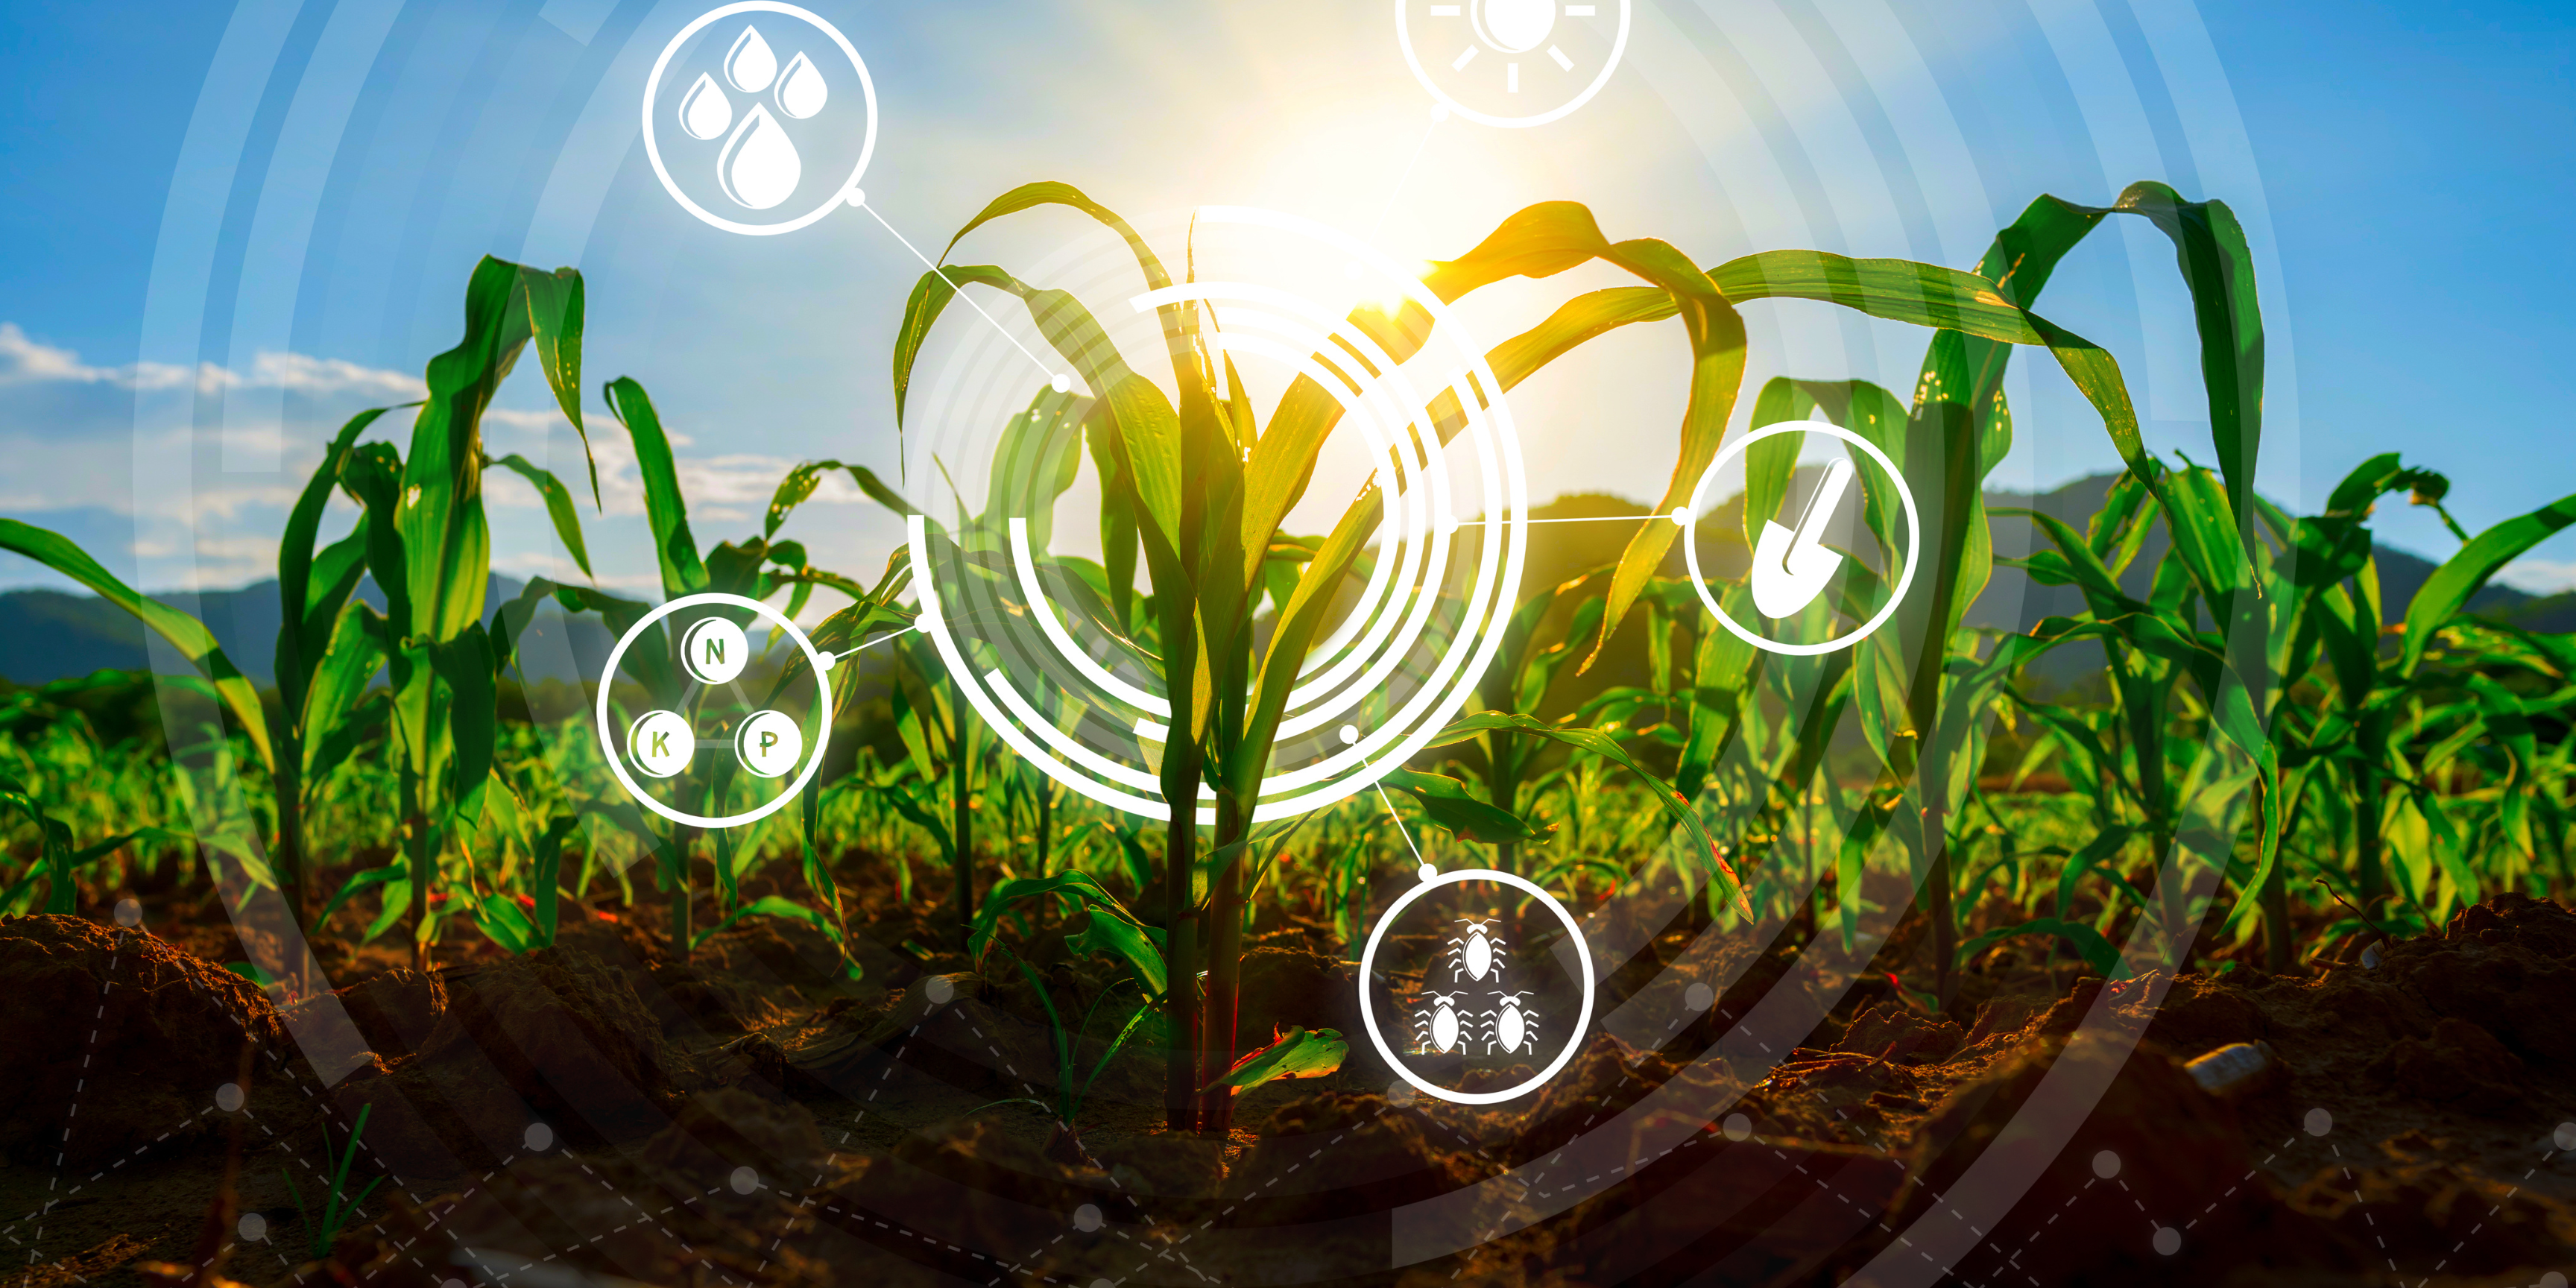 Sensors are the future of farming